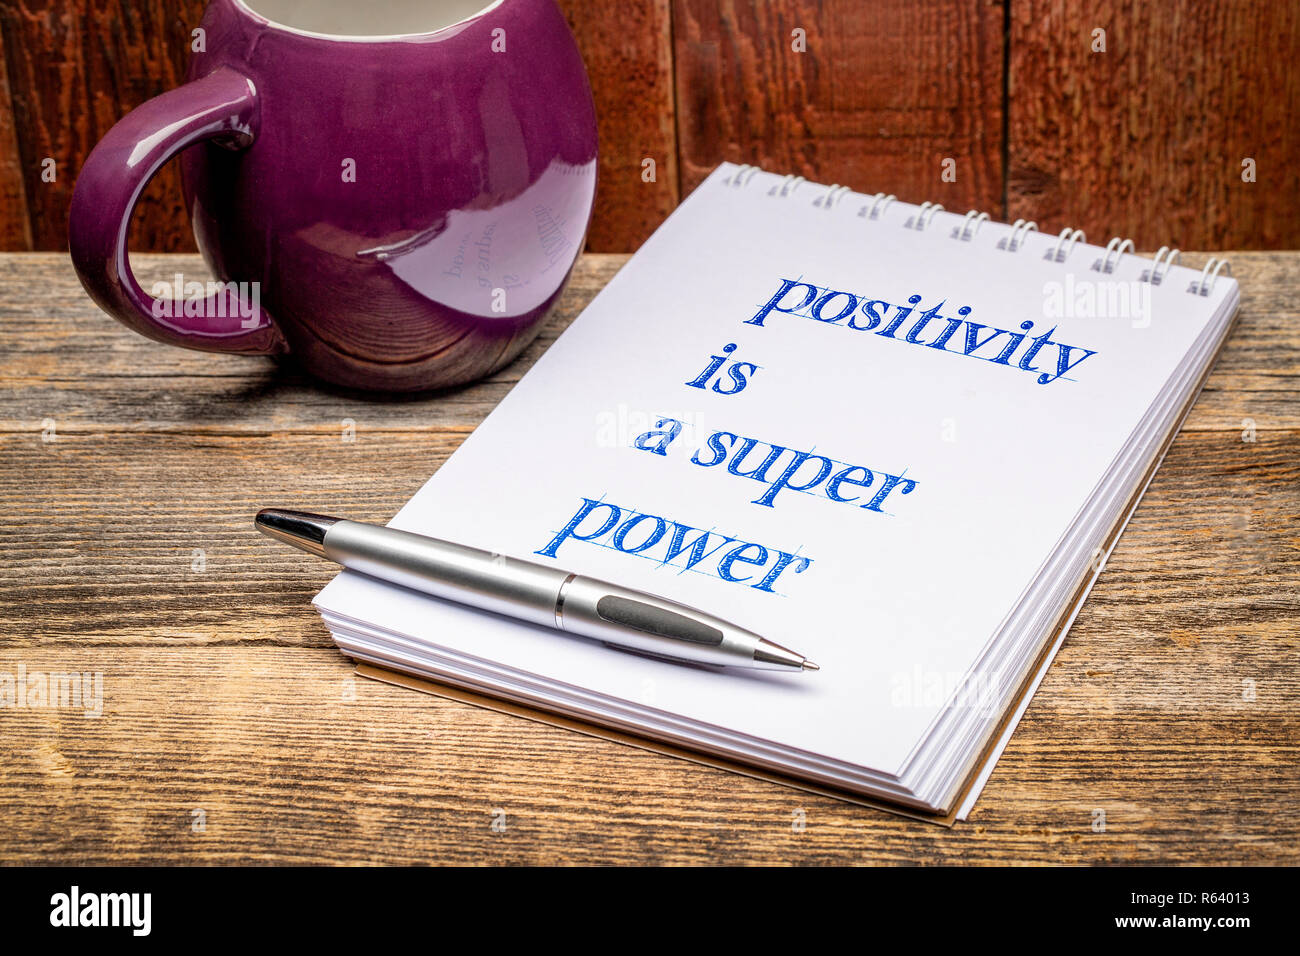 La positivité est une super-puissance - texte dans un cahier avec une tasse de thé ou café Banque D'Images